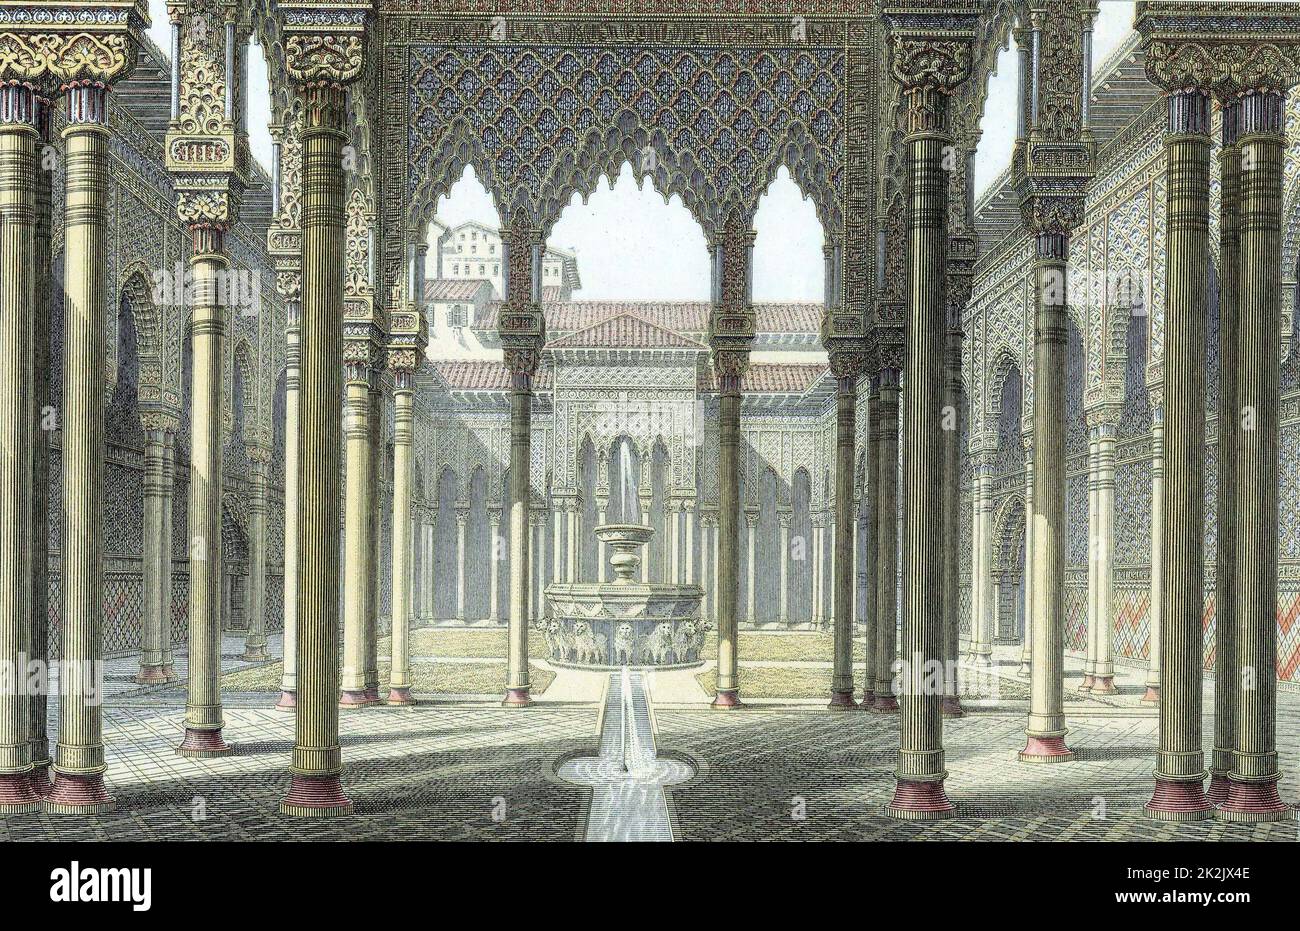 Alhambra-Palast der maurischen Könige von Granada wurde teilweise von Kaiser Karl V. c1530 umgebaut. Gericht der Löwen. Ende des 19.. Jahrhunderts mit Farbdruck Stockfoto